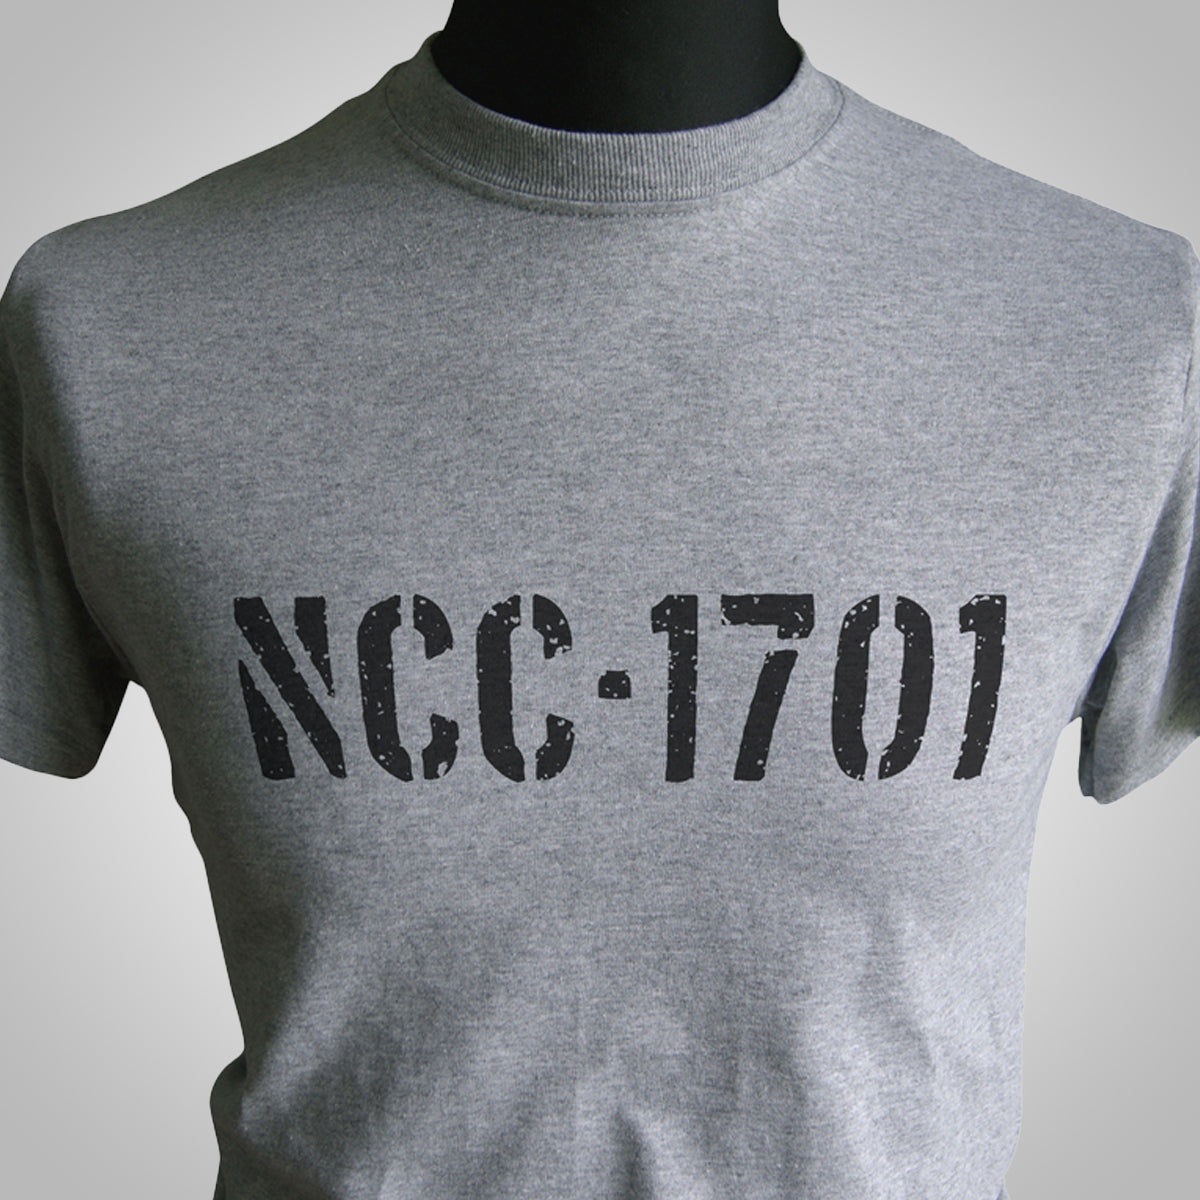 NCC-1701 T Shirt (Colour Options)